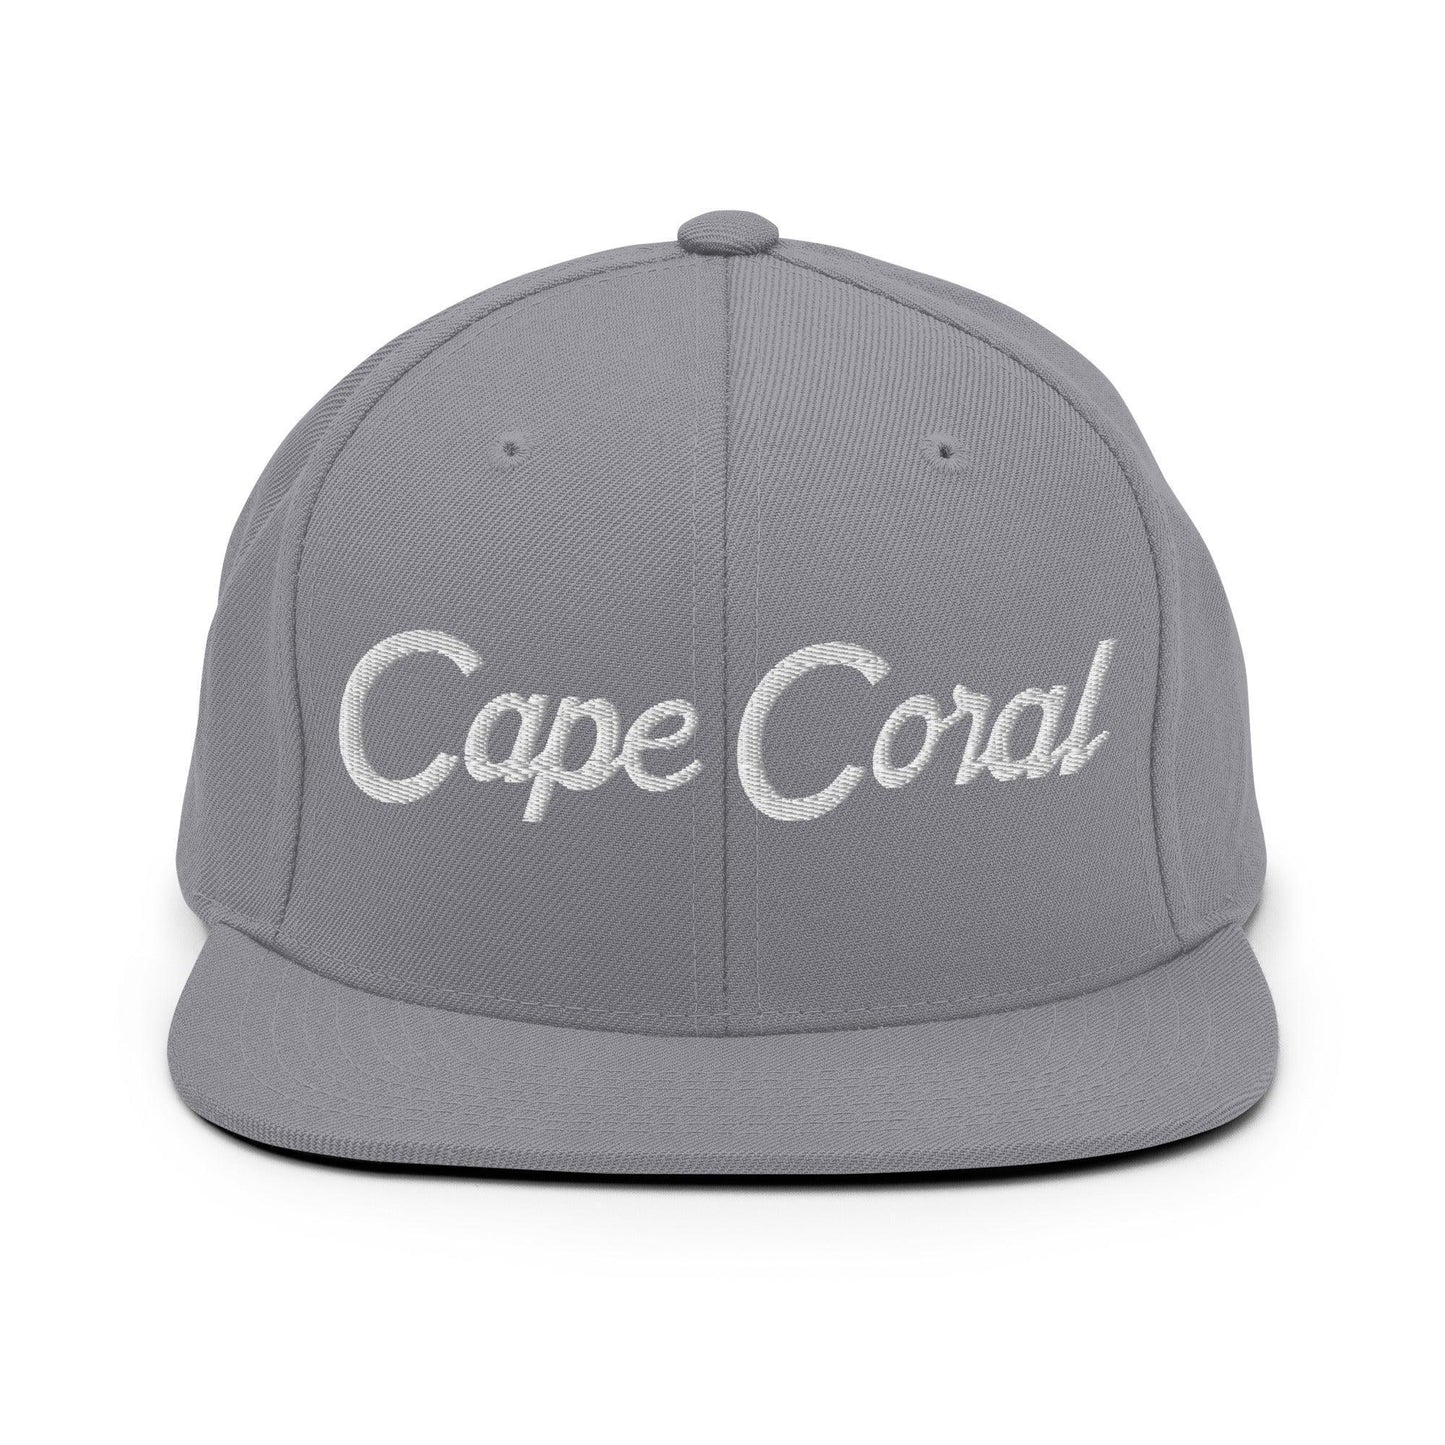 Cape Coral Script Snapback Hat Silver